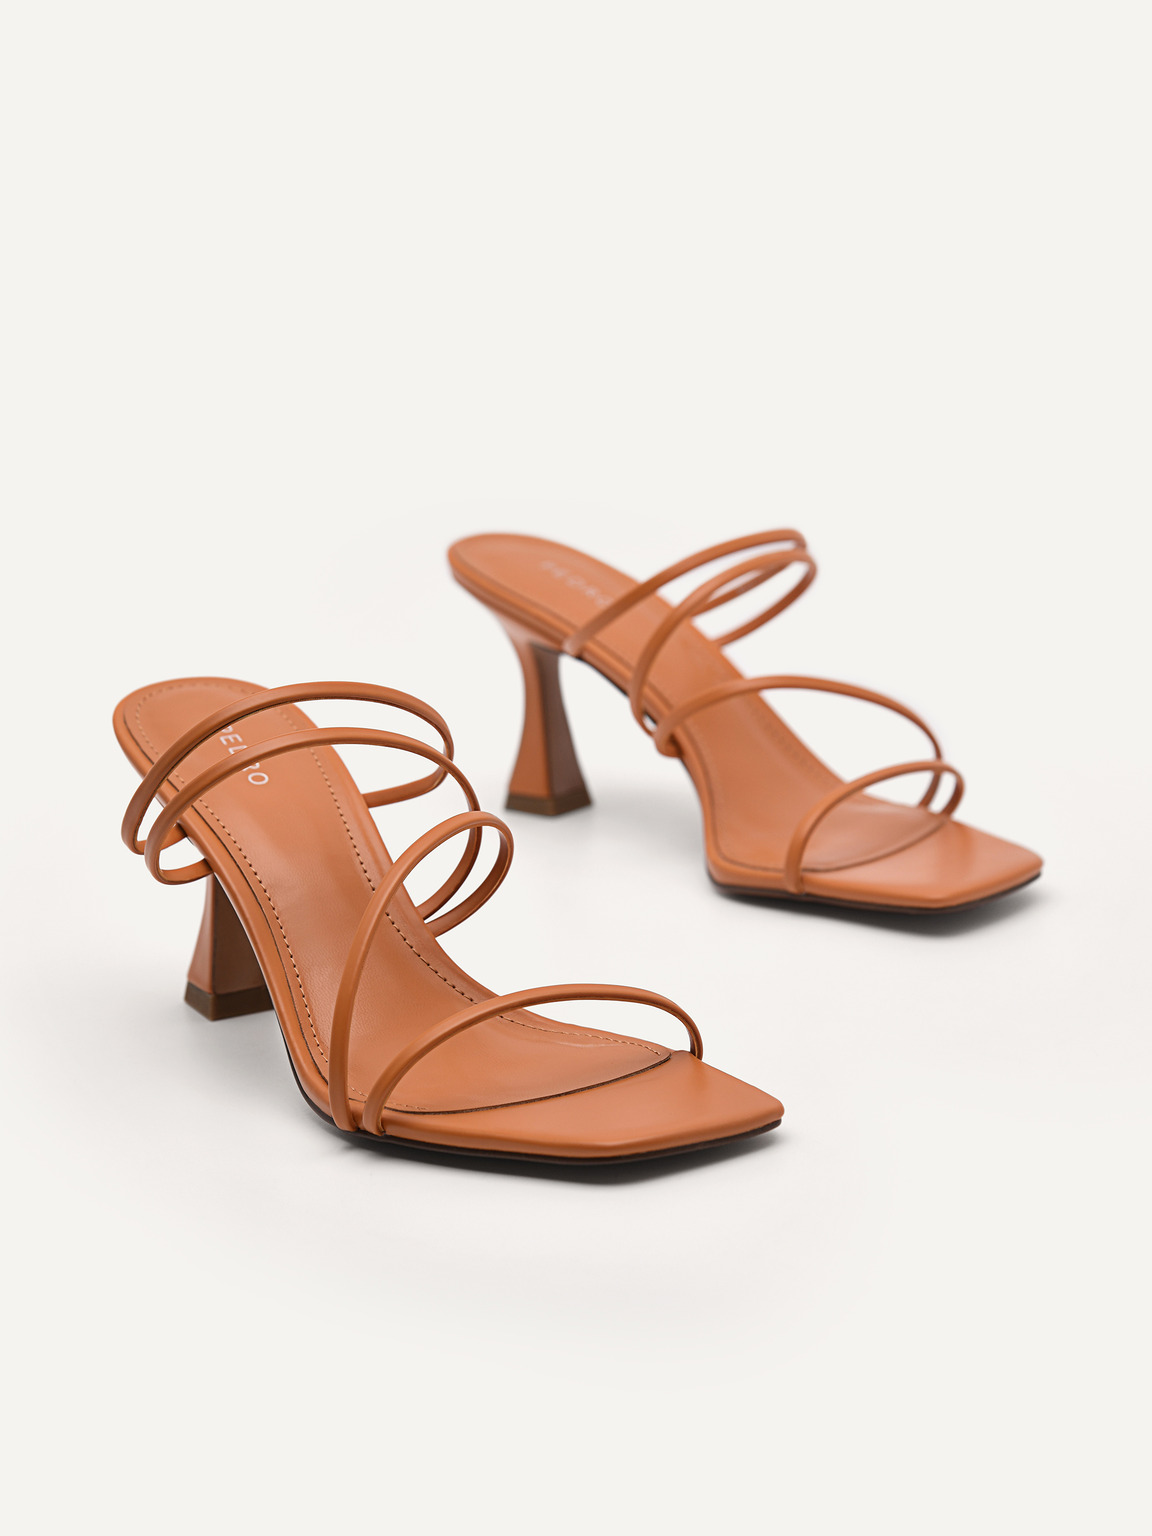 Strappy Heel Sandals - Orange, Orange